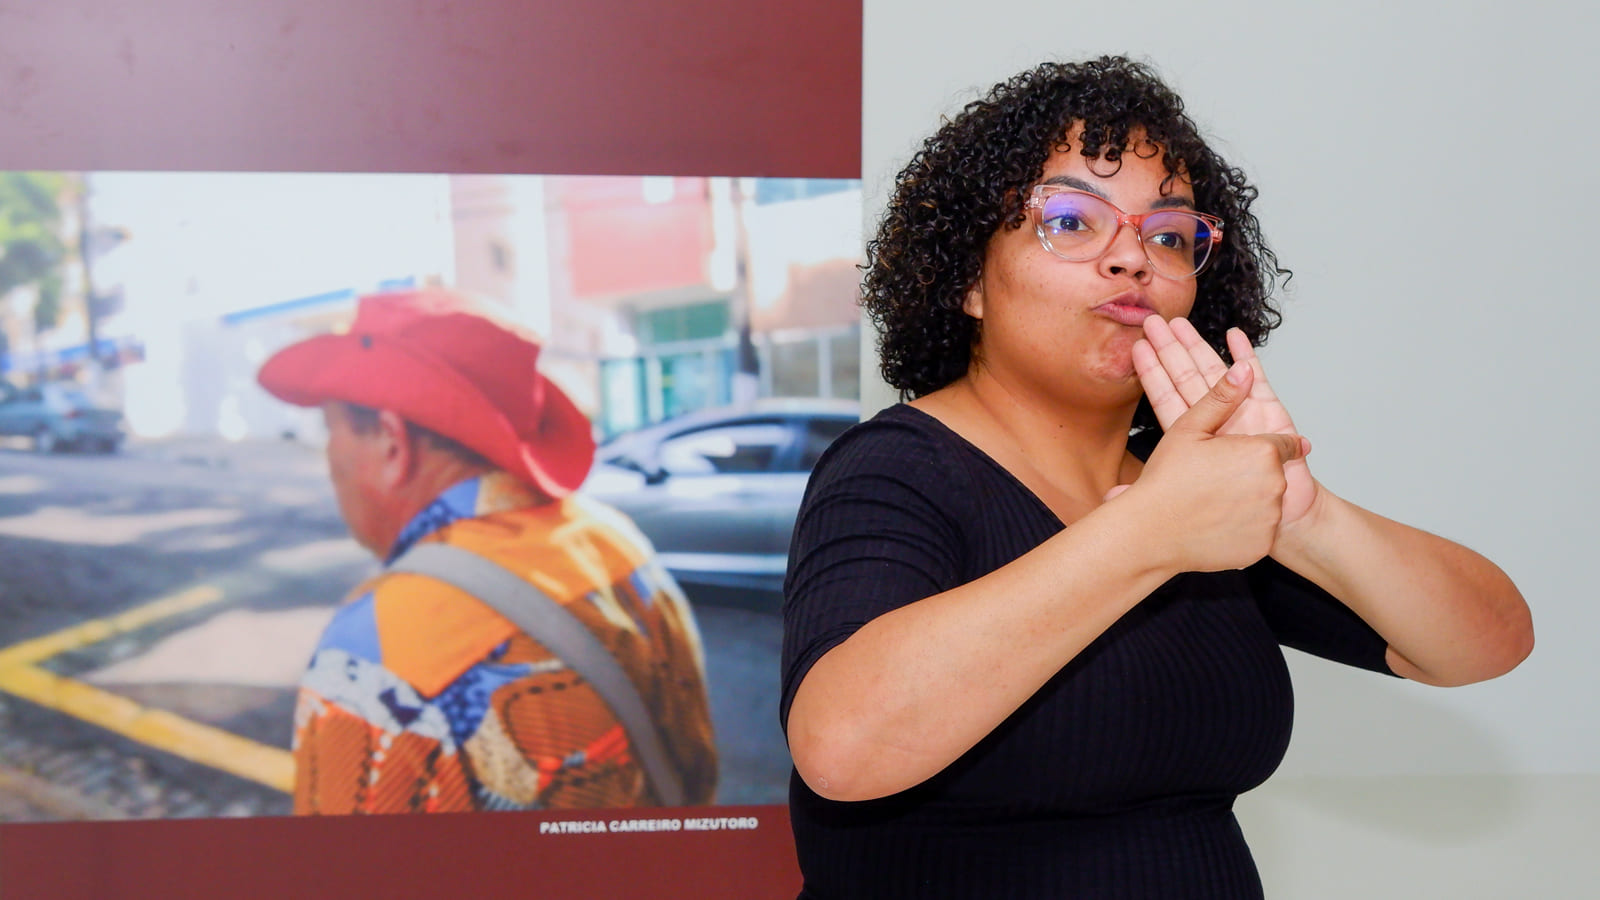 Intérprete de Libras na cerimônia de lançamento da exposição fotográfica “Apropriação da Paisagem”, no Museu da Inclusão.